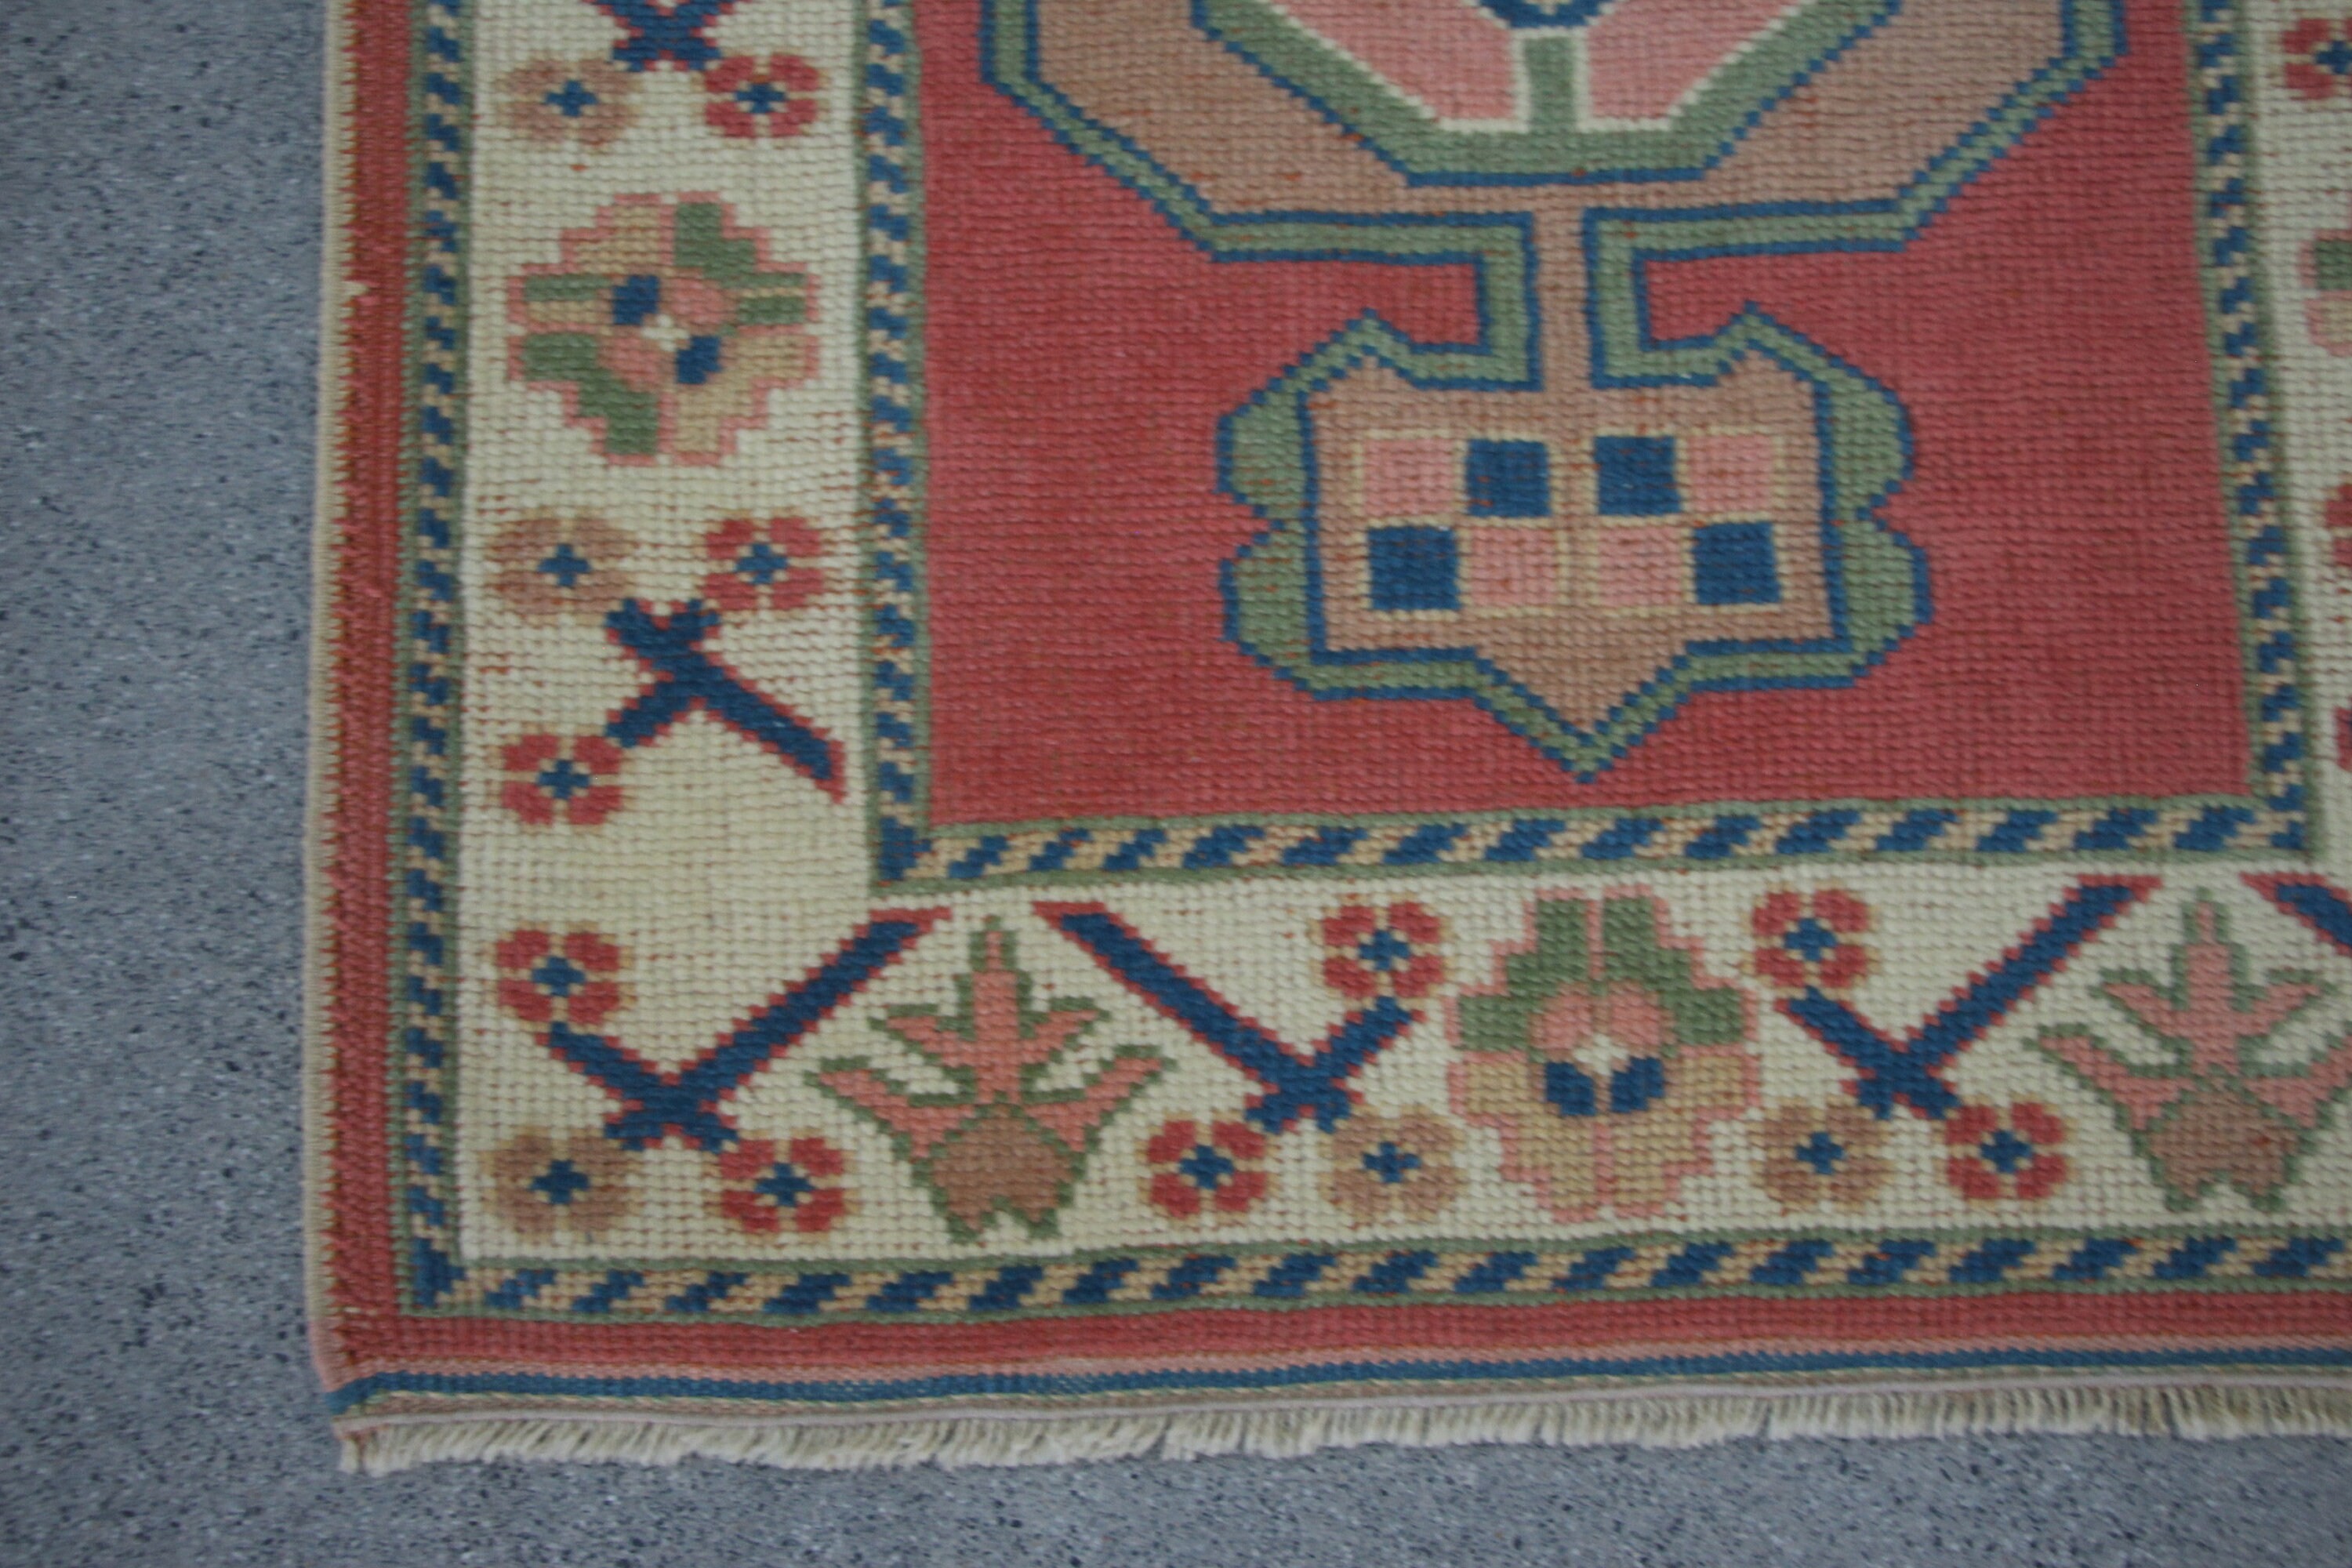 Antique Rug, Turkish Rug, Stair Rug, Oushak Rug, Pink Oriental Rugs, Rugs for Hallway, 2.6x6.5 ft Runner Rugs, Vintage Rug, Corridor Rug